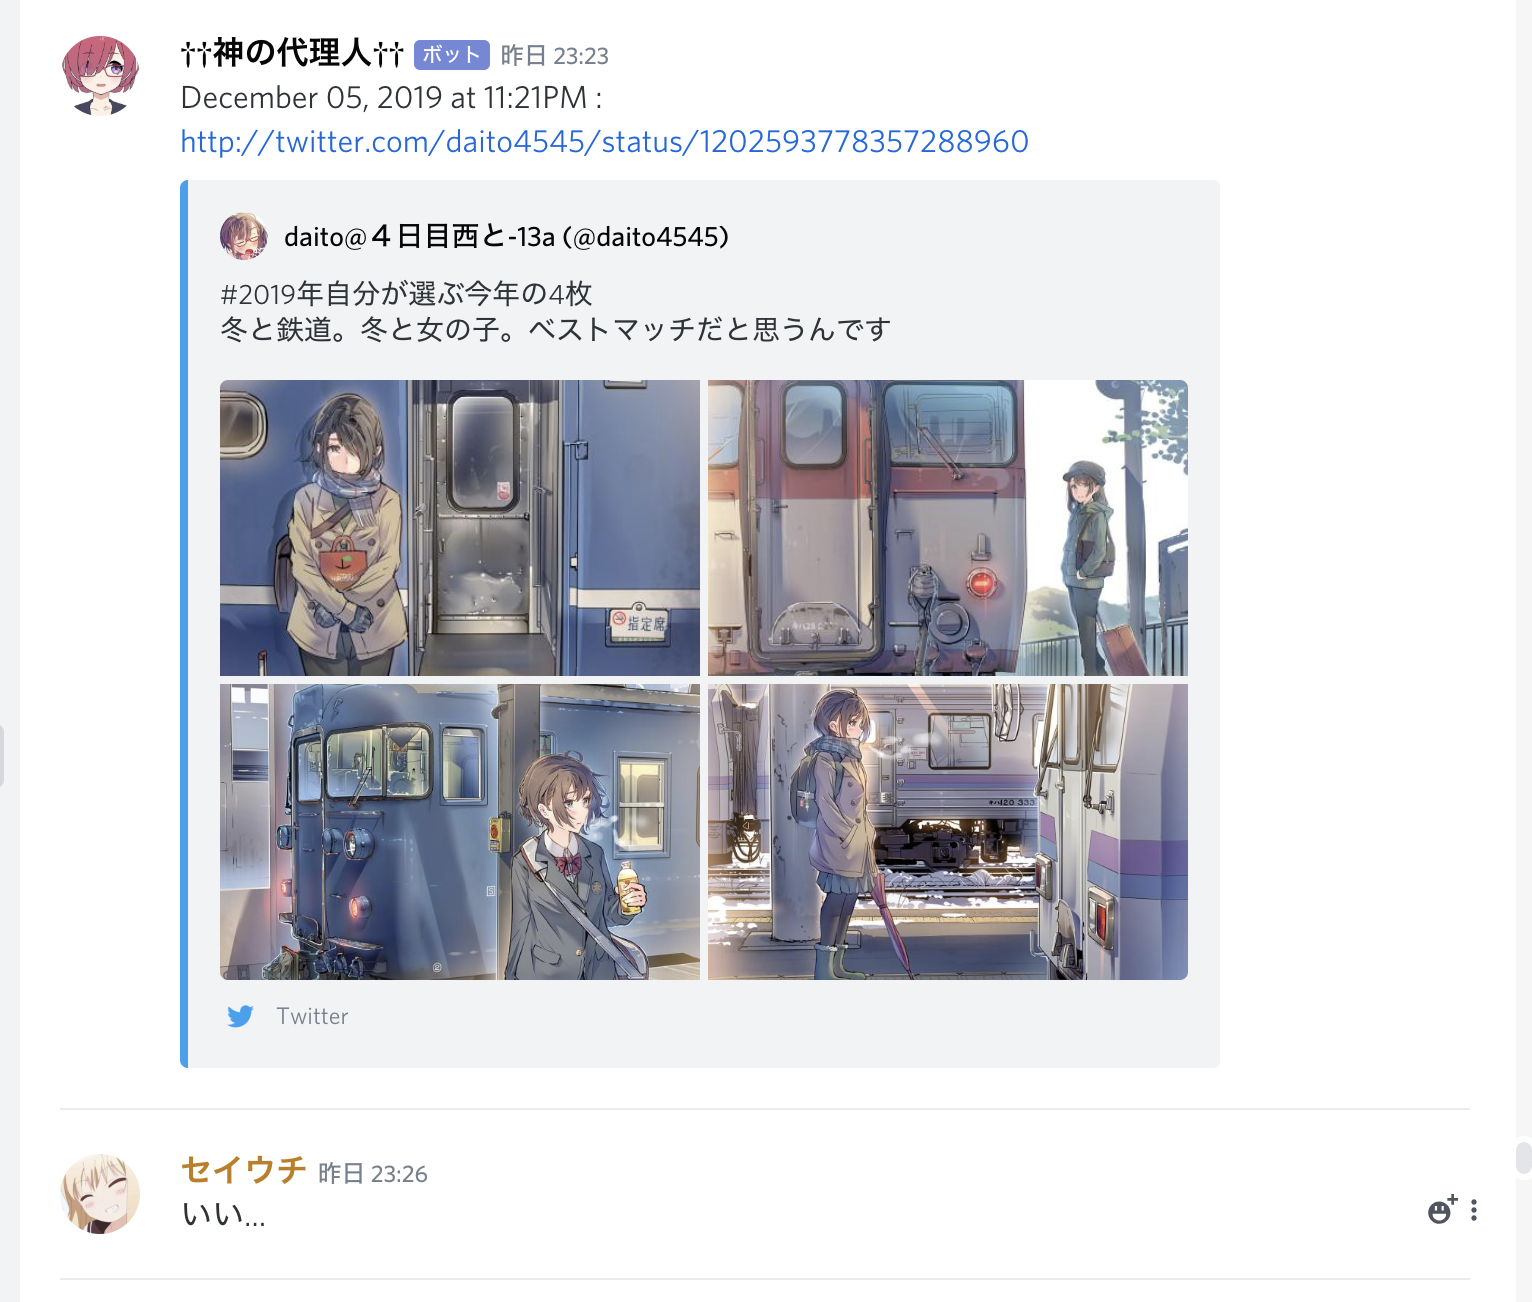 Twitterの神絵師のイラストが投稿されたらdiscordに自動で投稿する Cities Skylines Japan 管理人ブログ